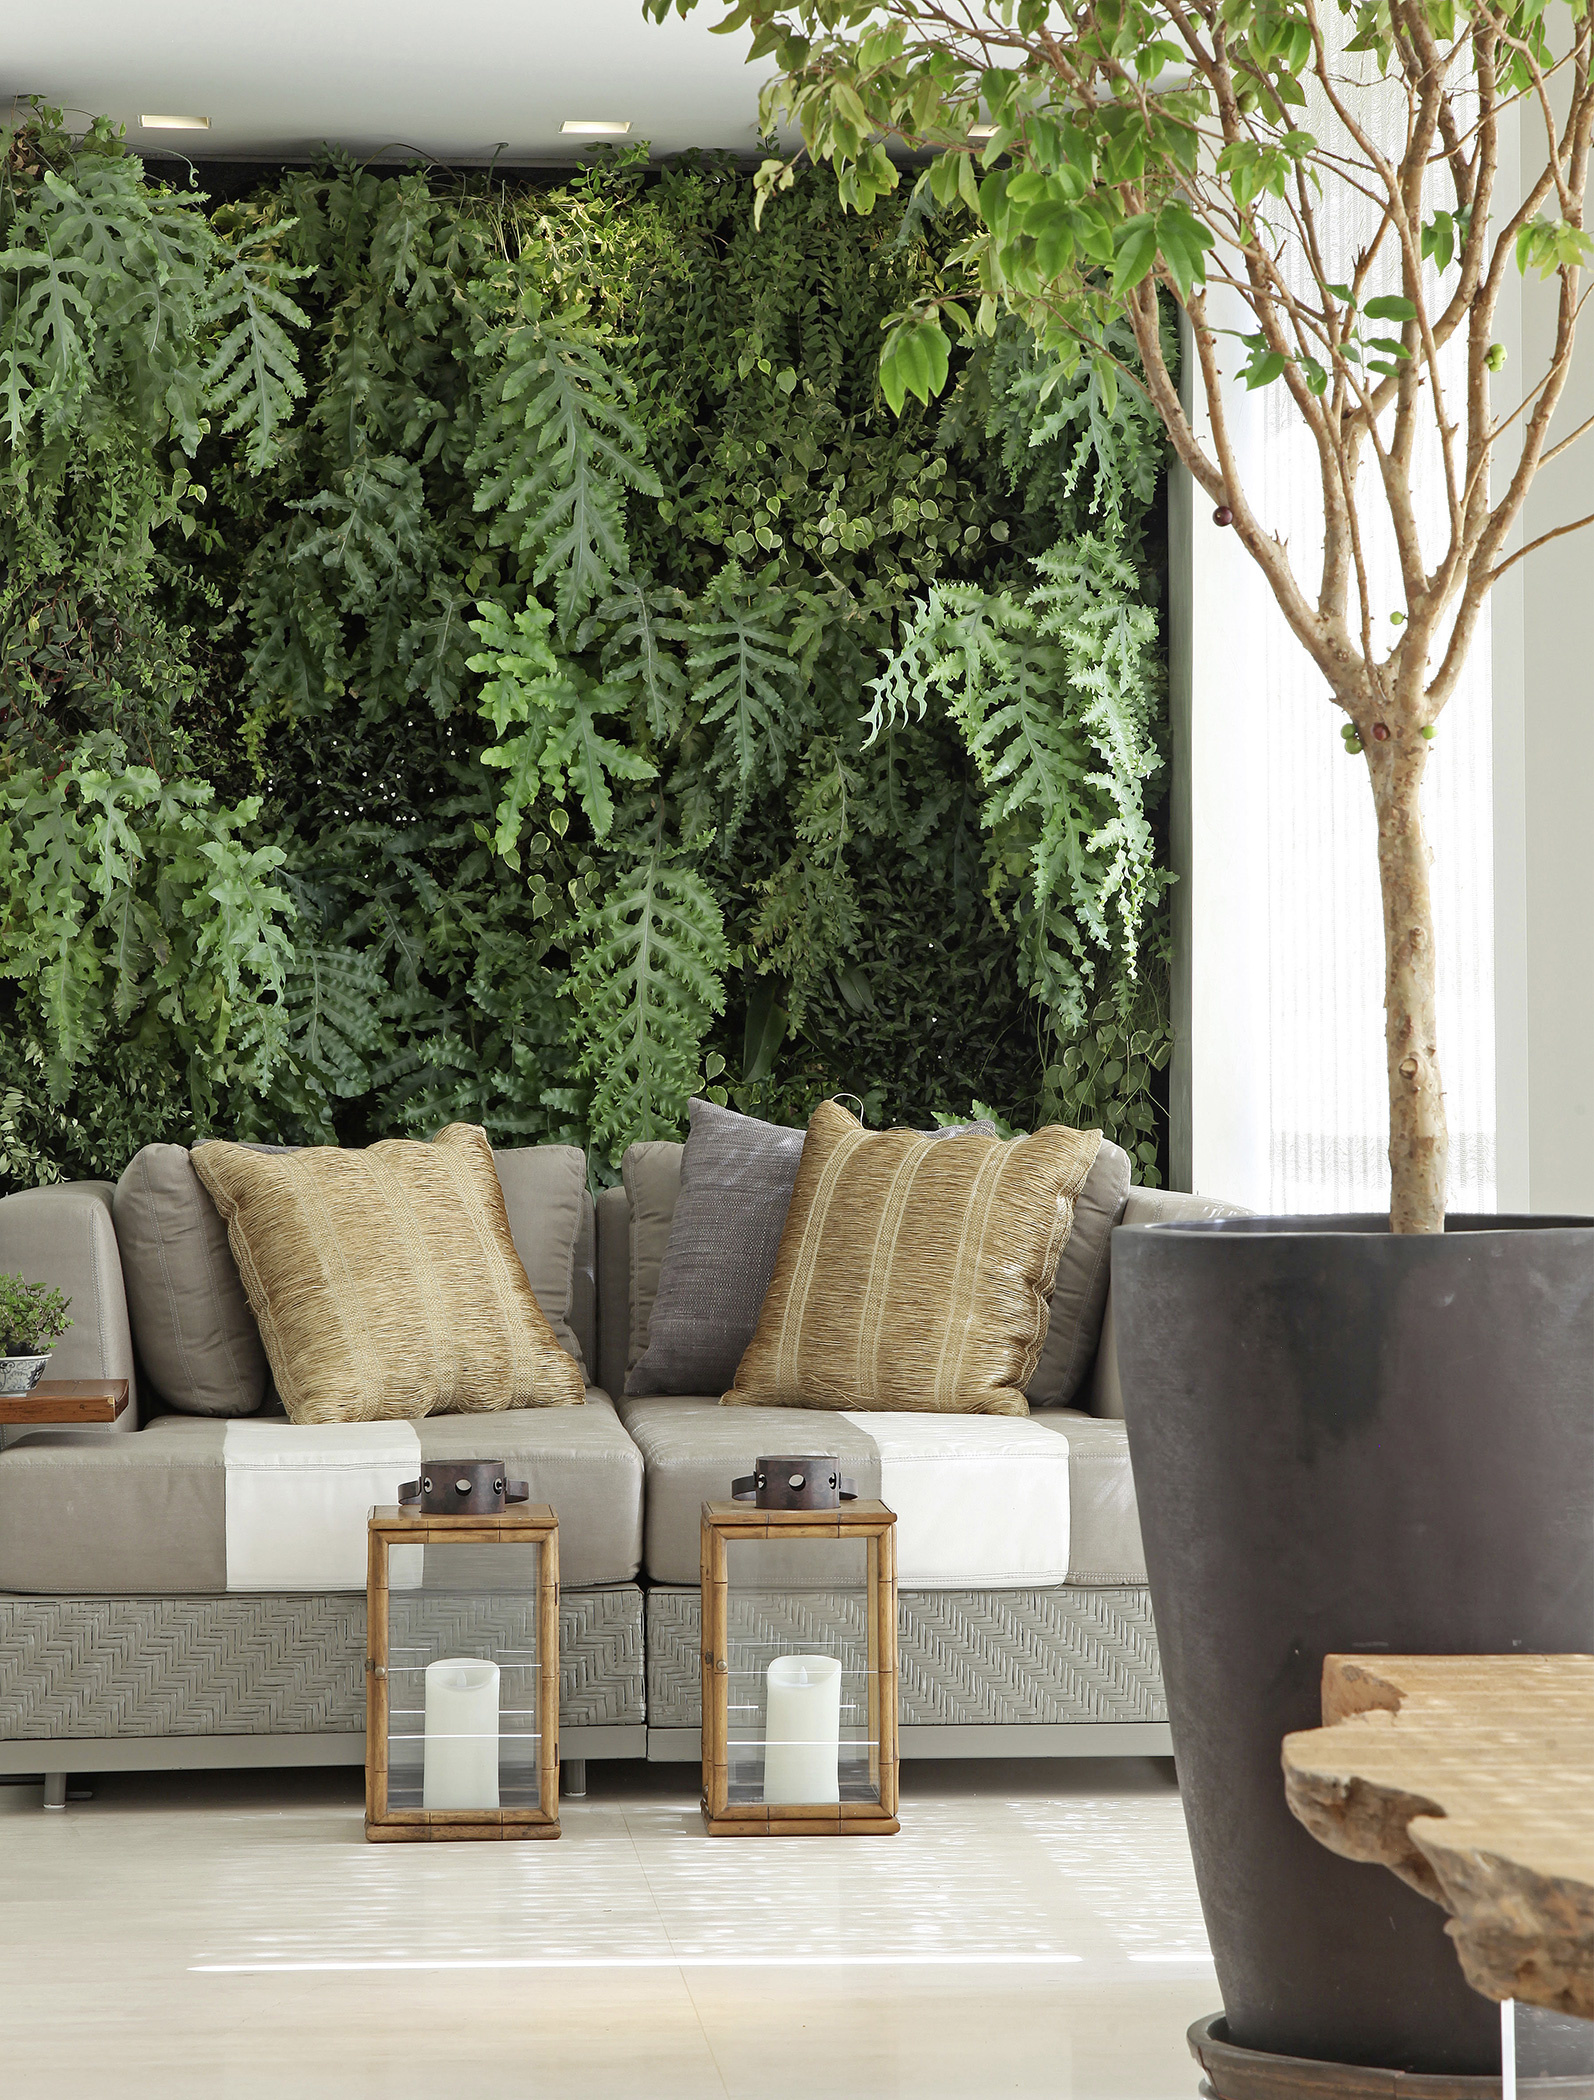 Bước vào phòng khách trong căn hộ này mà chúng ta cảm giác như lạc vào một khu rừng với cây cối tươi xanh, không chỉ là cây trồng trong chậu mà còn cả trên bức tường sống động.